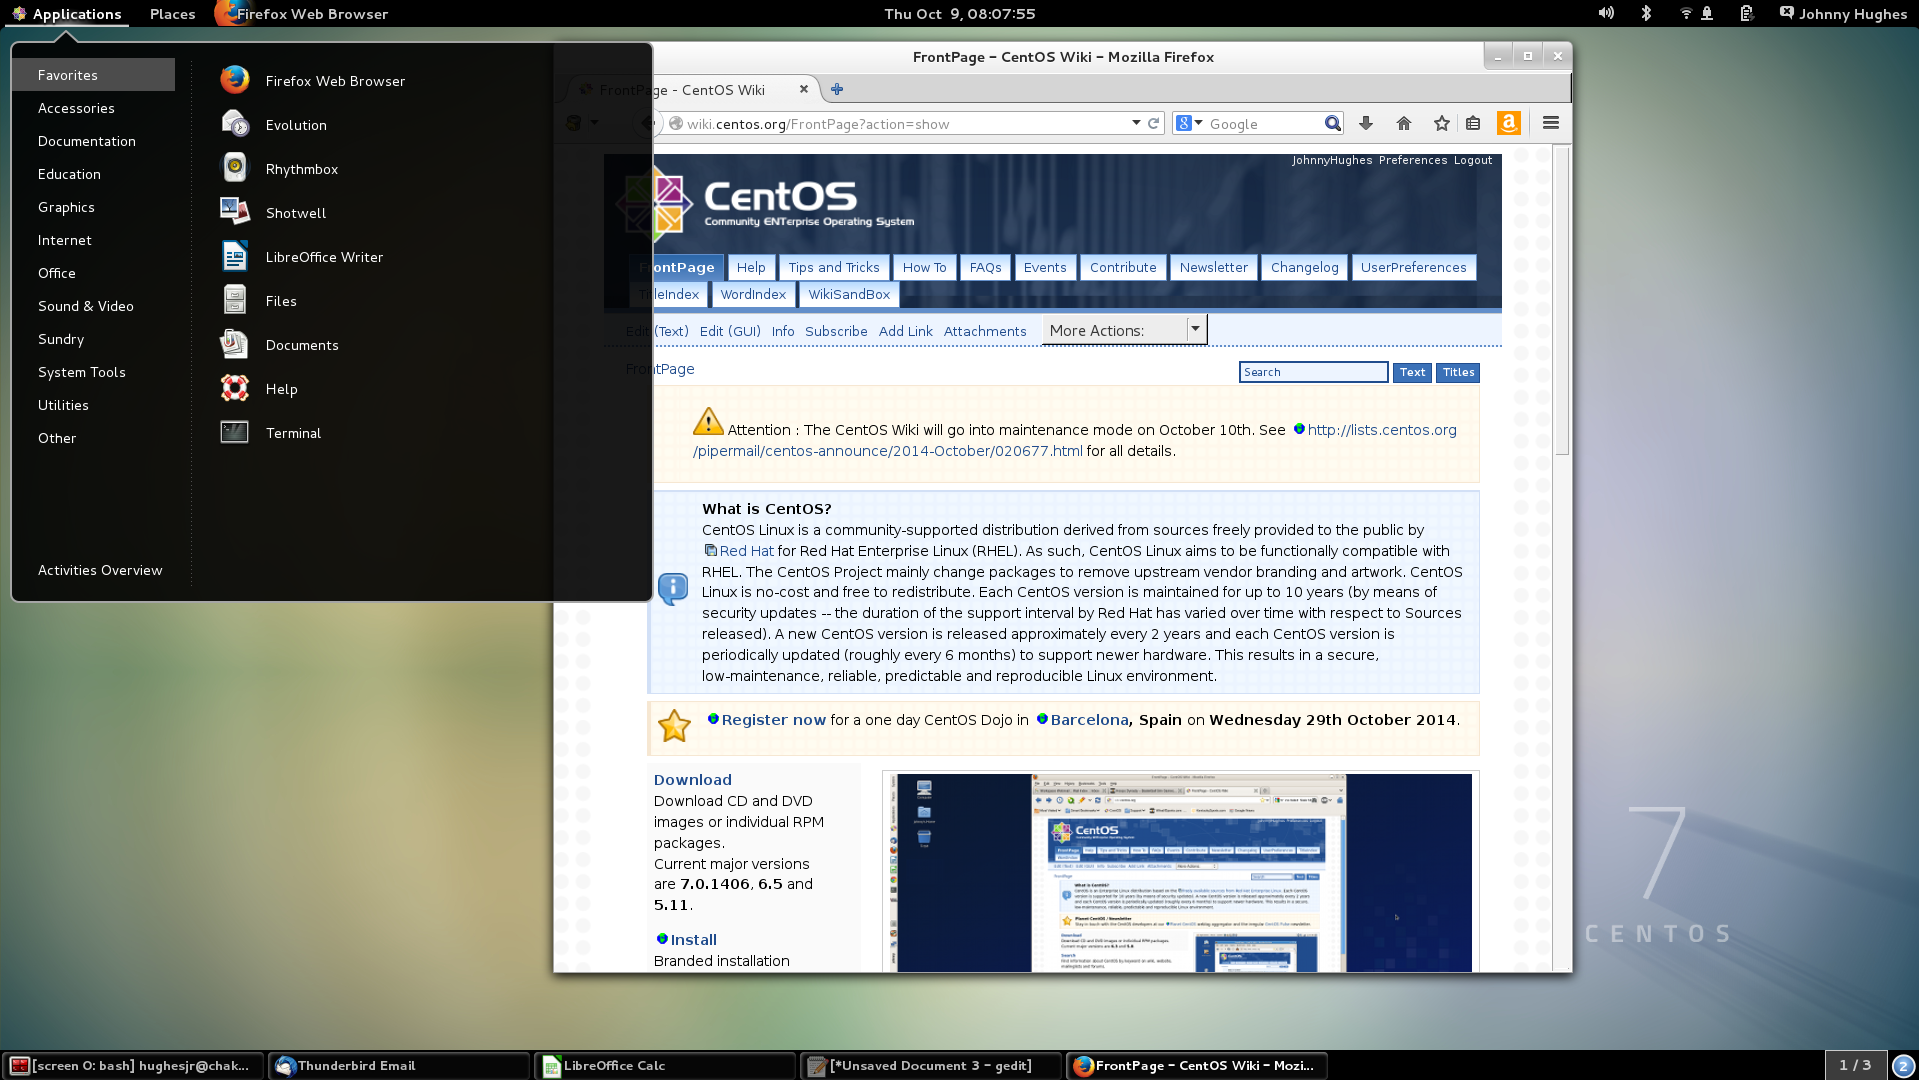 Risorsa grafica - foto, screenshot o immagine in genere - relativa ai contenuti pubblicati da unixzone.it | Nome immagine: news2856_CentOS-Linux-7_1.png